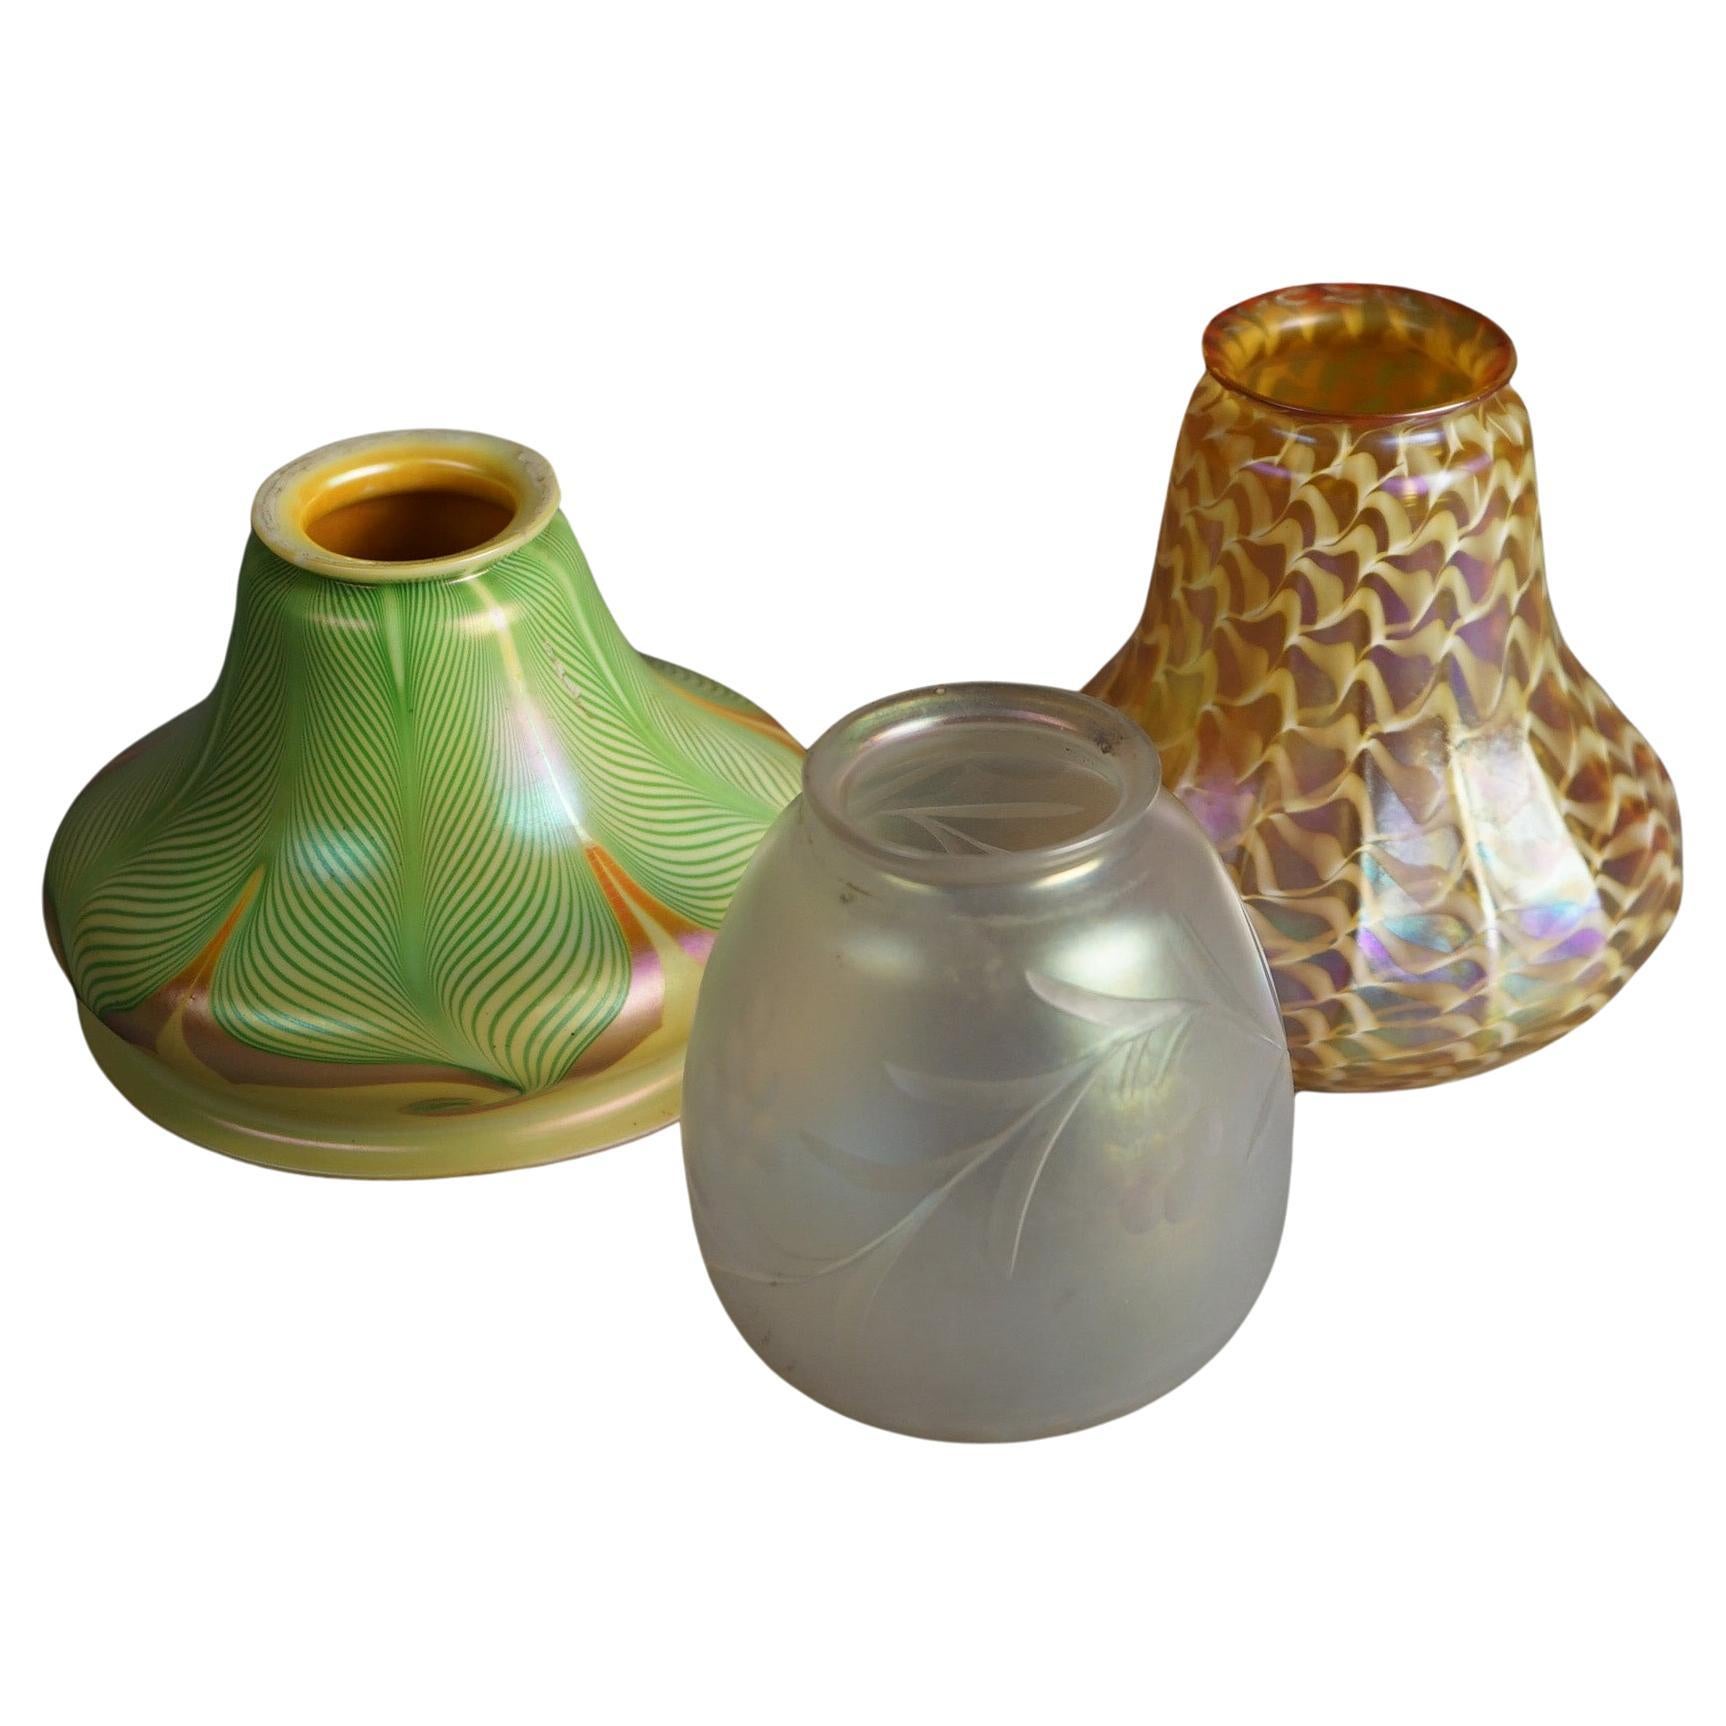 Trois abat-jours Arts & Crafts Steuben & Quezal Art Glass C1920